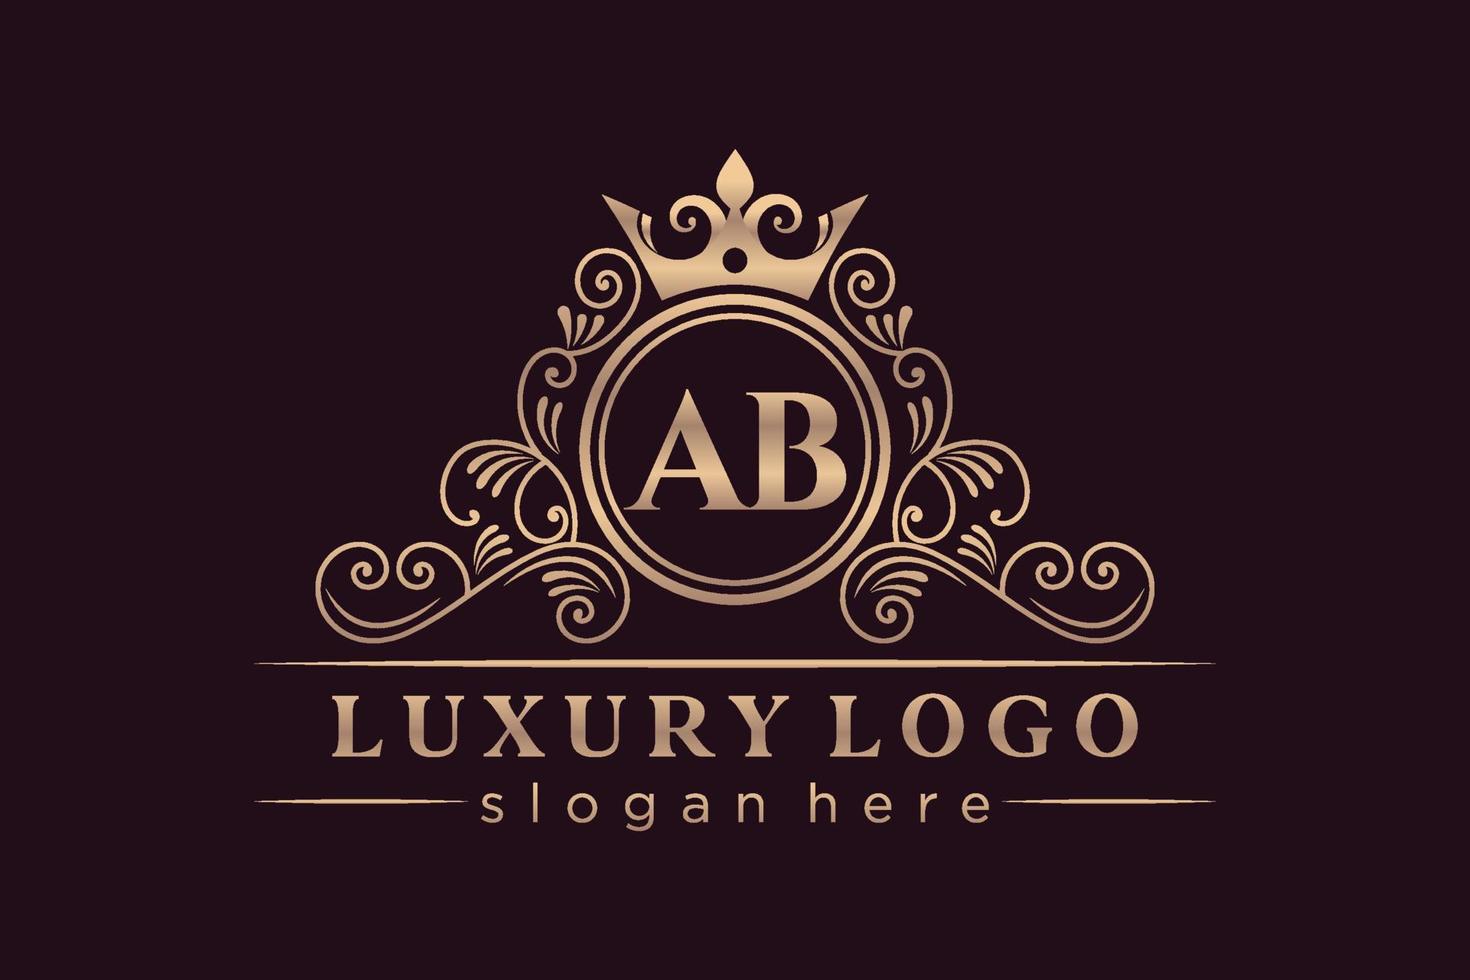 AB Initial Letter Gold calligraphic feminine floral hand drawn heraldic monogram antique vintage style luxury logo design Premium Vector